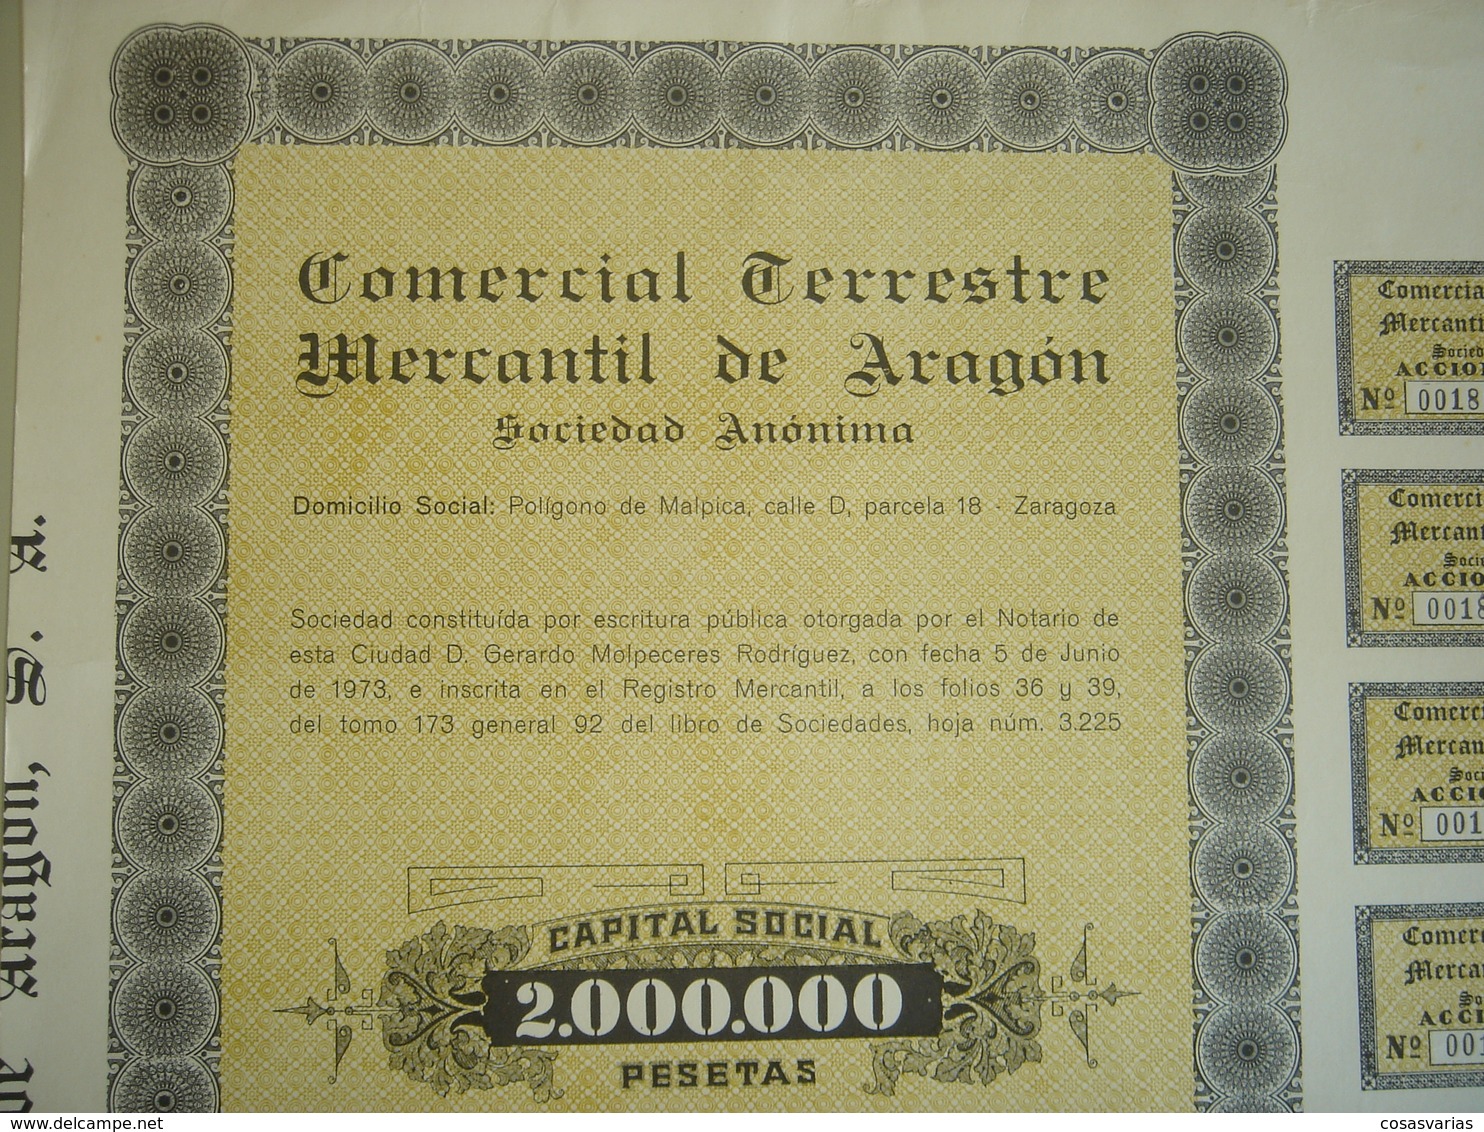 COMERCIAL TERRESTRE MERCANTIL ARAGÓN - Acción 1000 Pesetas - Zaragoza, 5 Junio 1974 - OriginalACTION AKTION - Transports